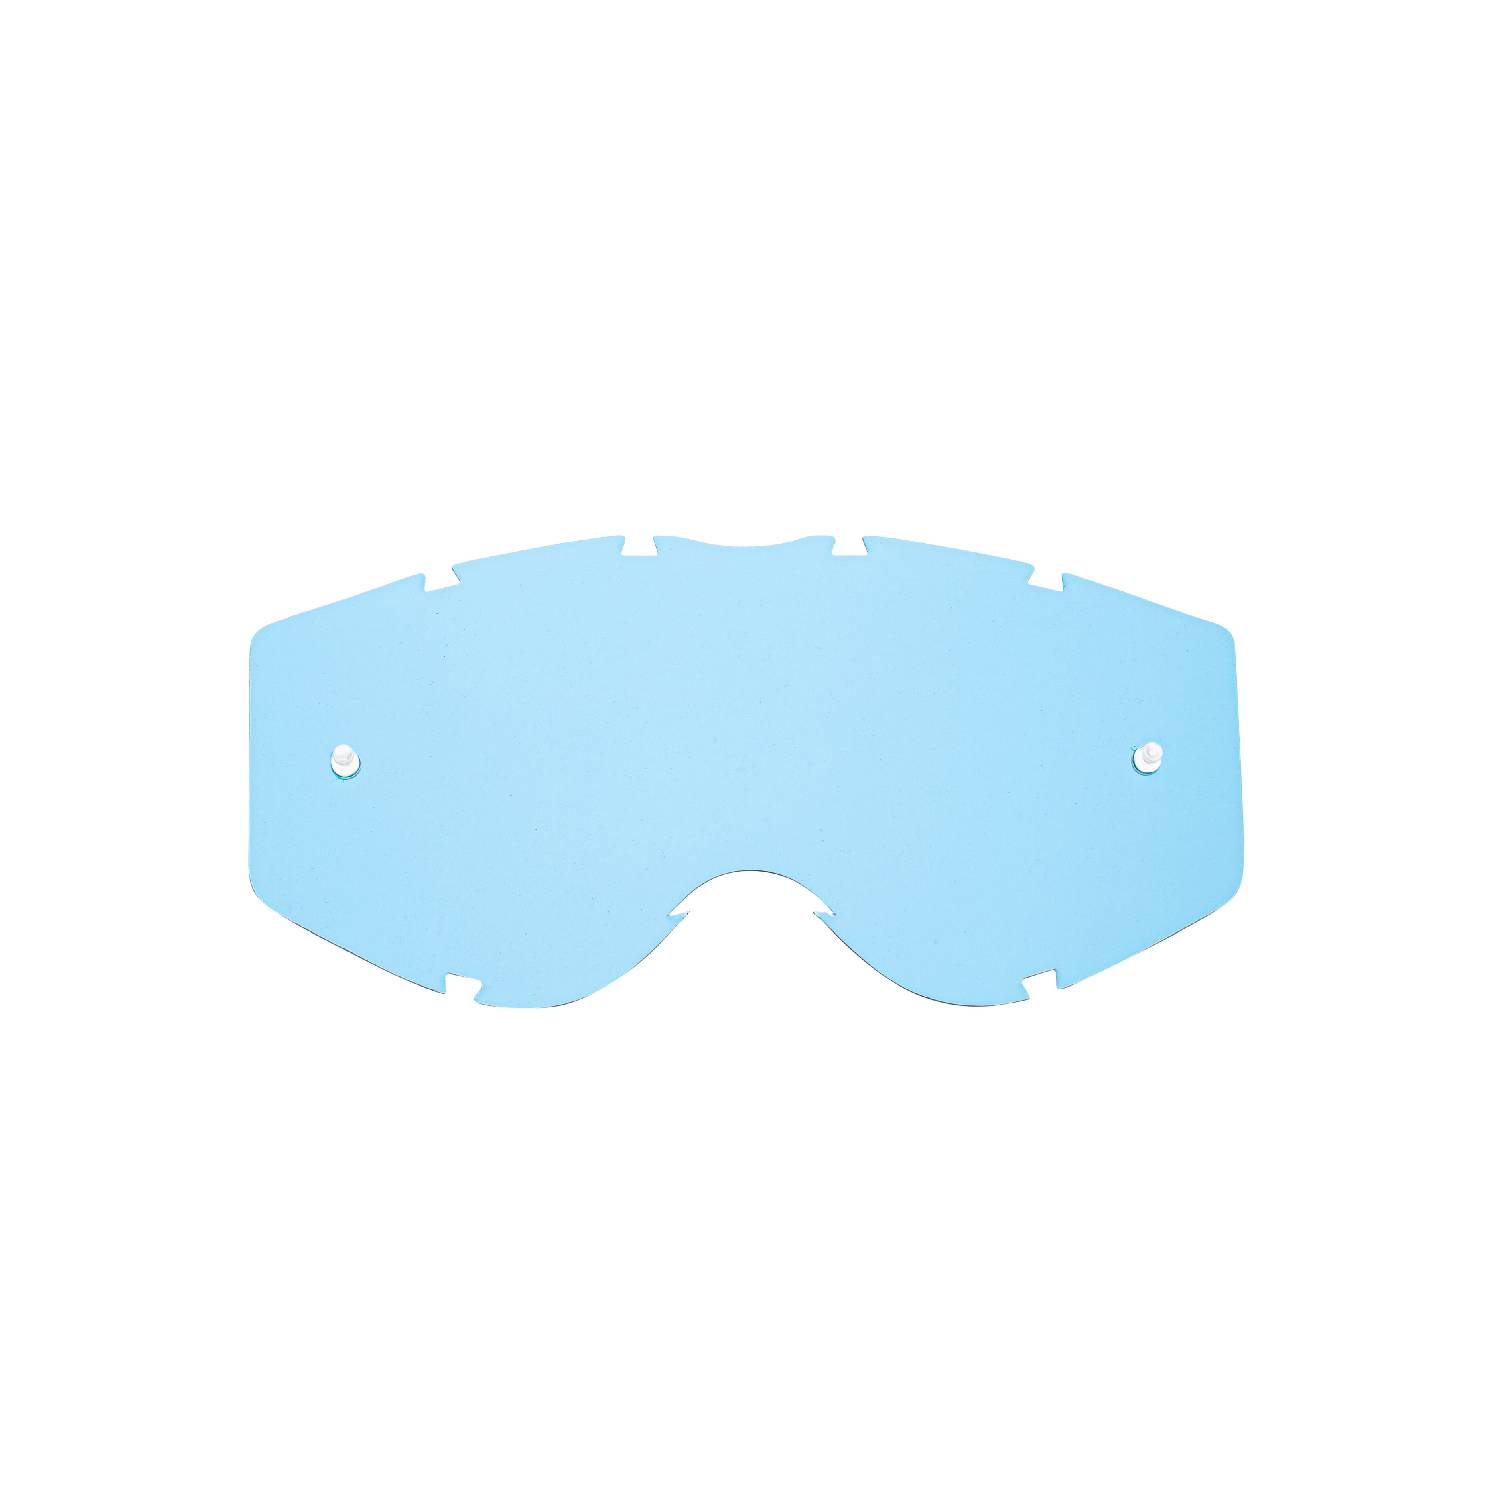 Lente di ricambio blu compatibile per occhiale/maschera Progrip 3303 Vista